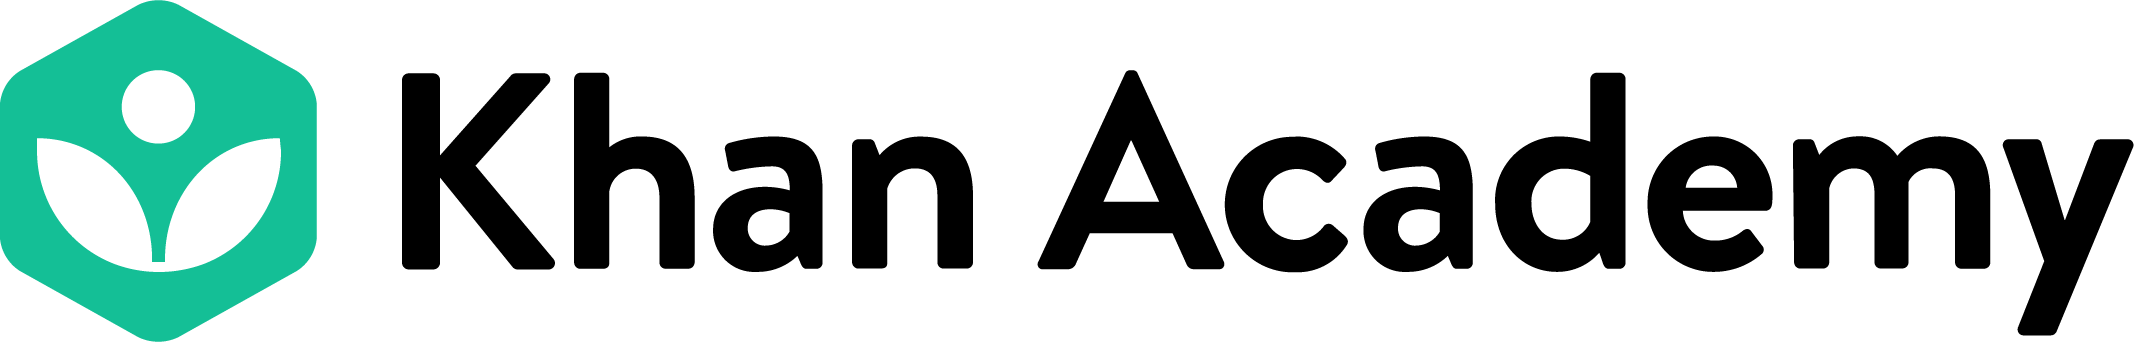 Image of Khan Academy logo.